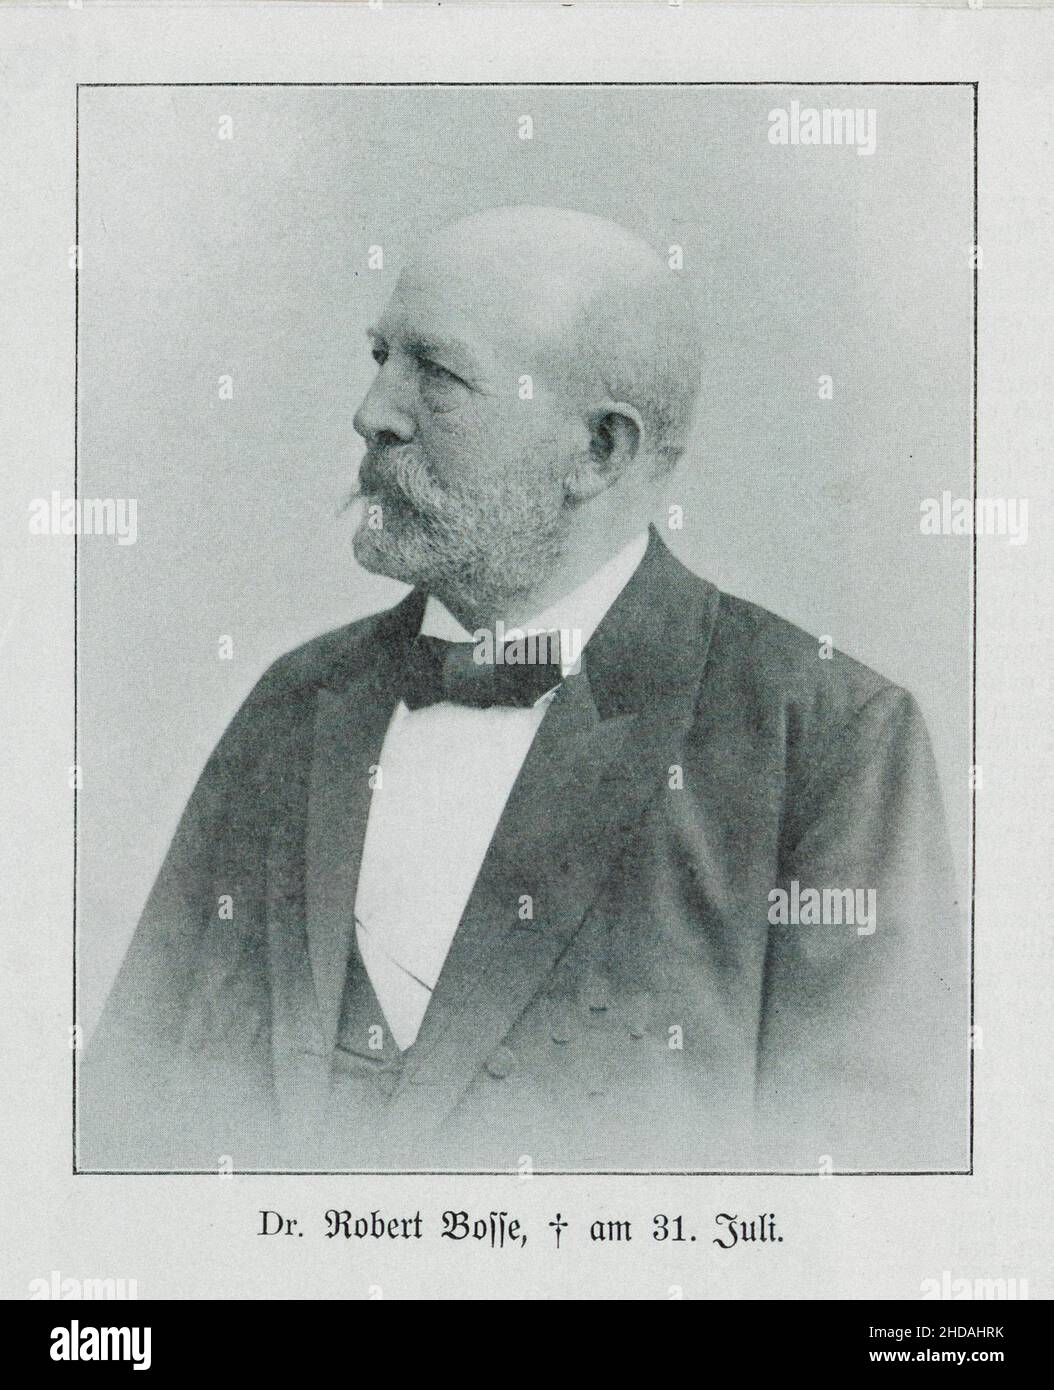 Ritratto d'epoca di Julius Robert Bosse, 1901 Julius Robert Bosse (1832 - 1901) è stato un politico tedesco attivo nella riforma sociale e nella legislazione sociale Foto Stock